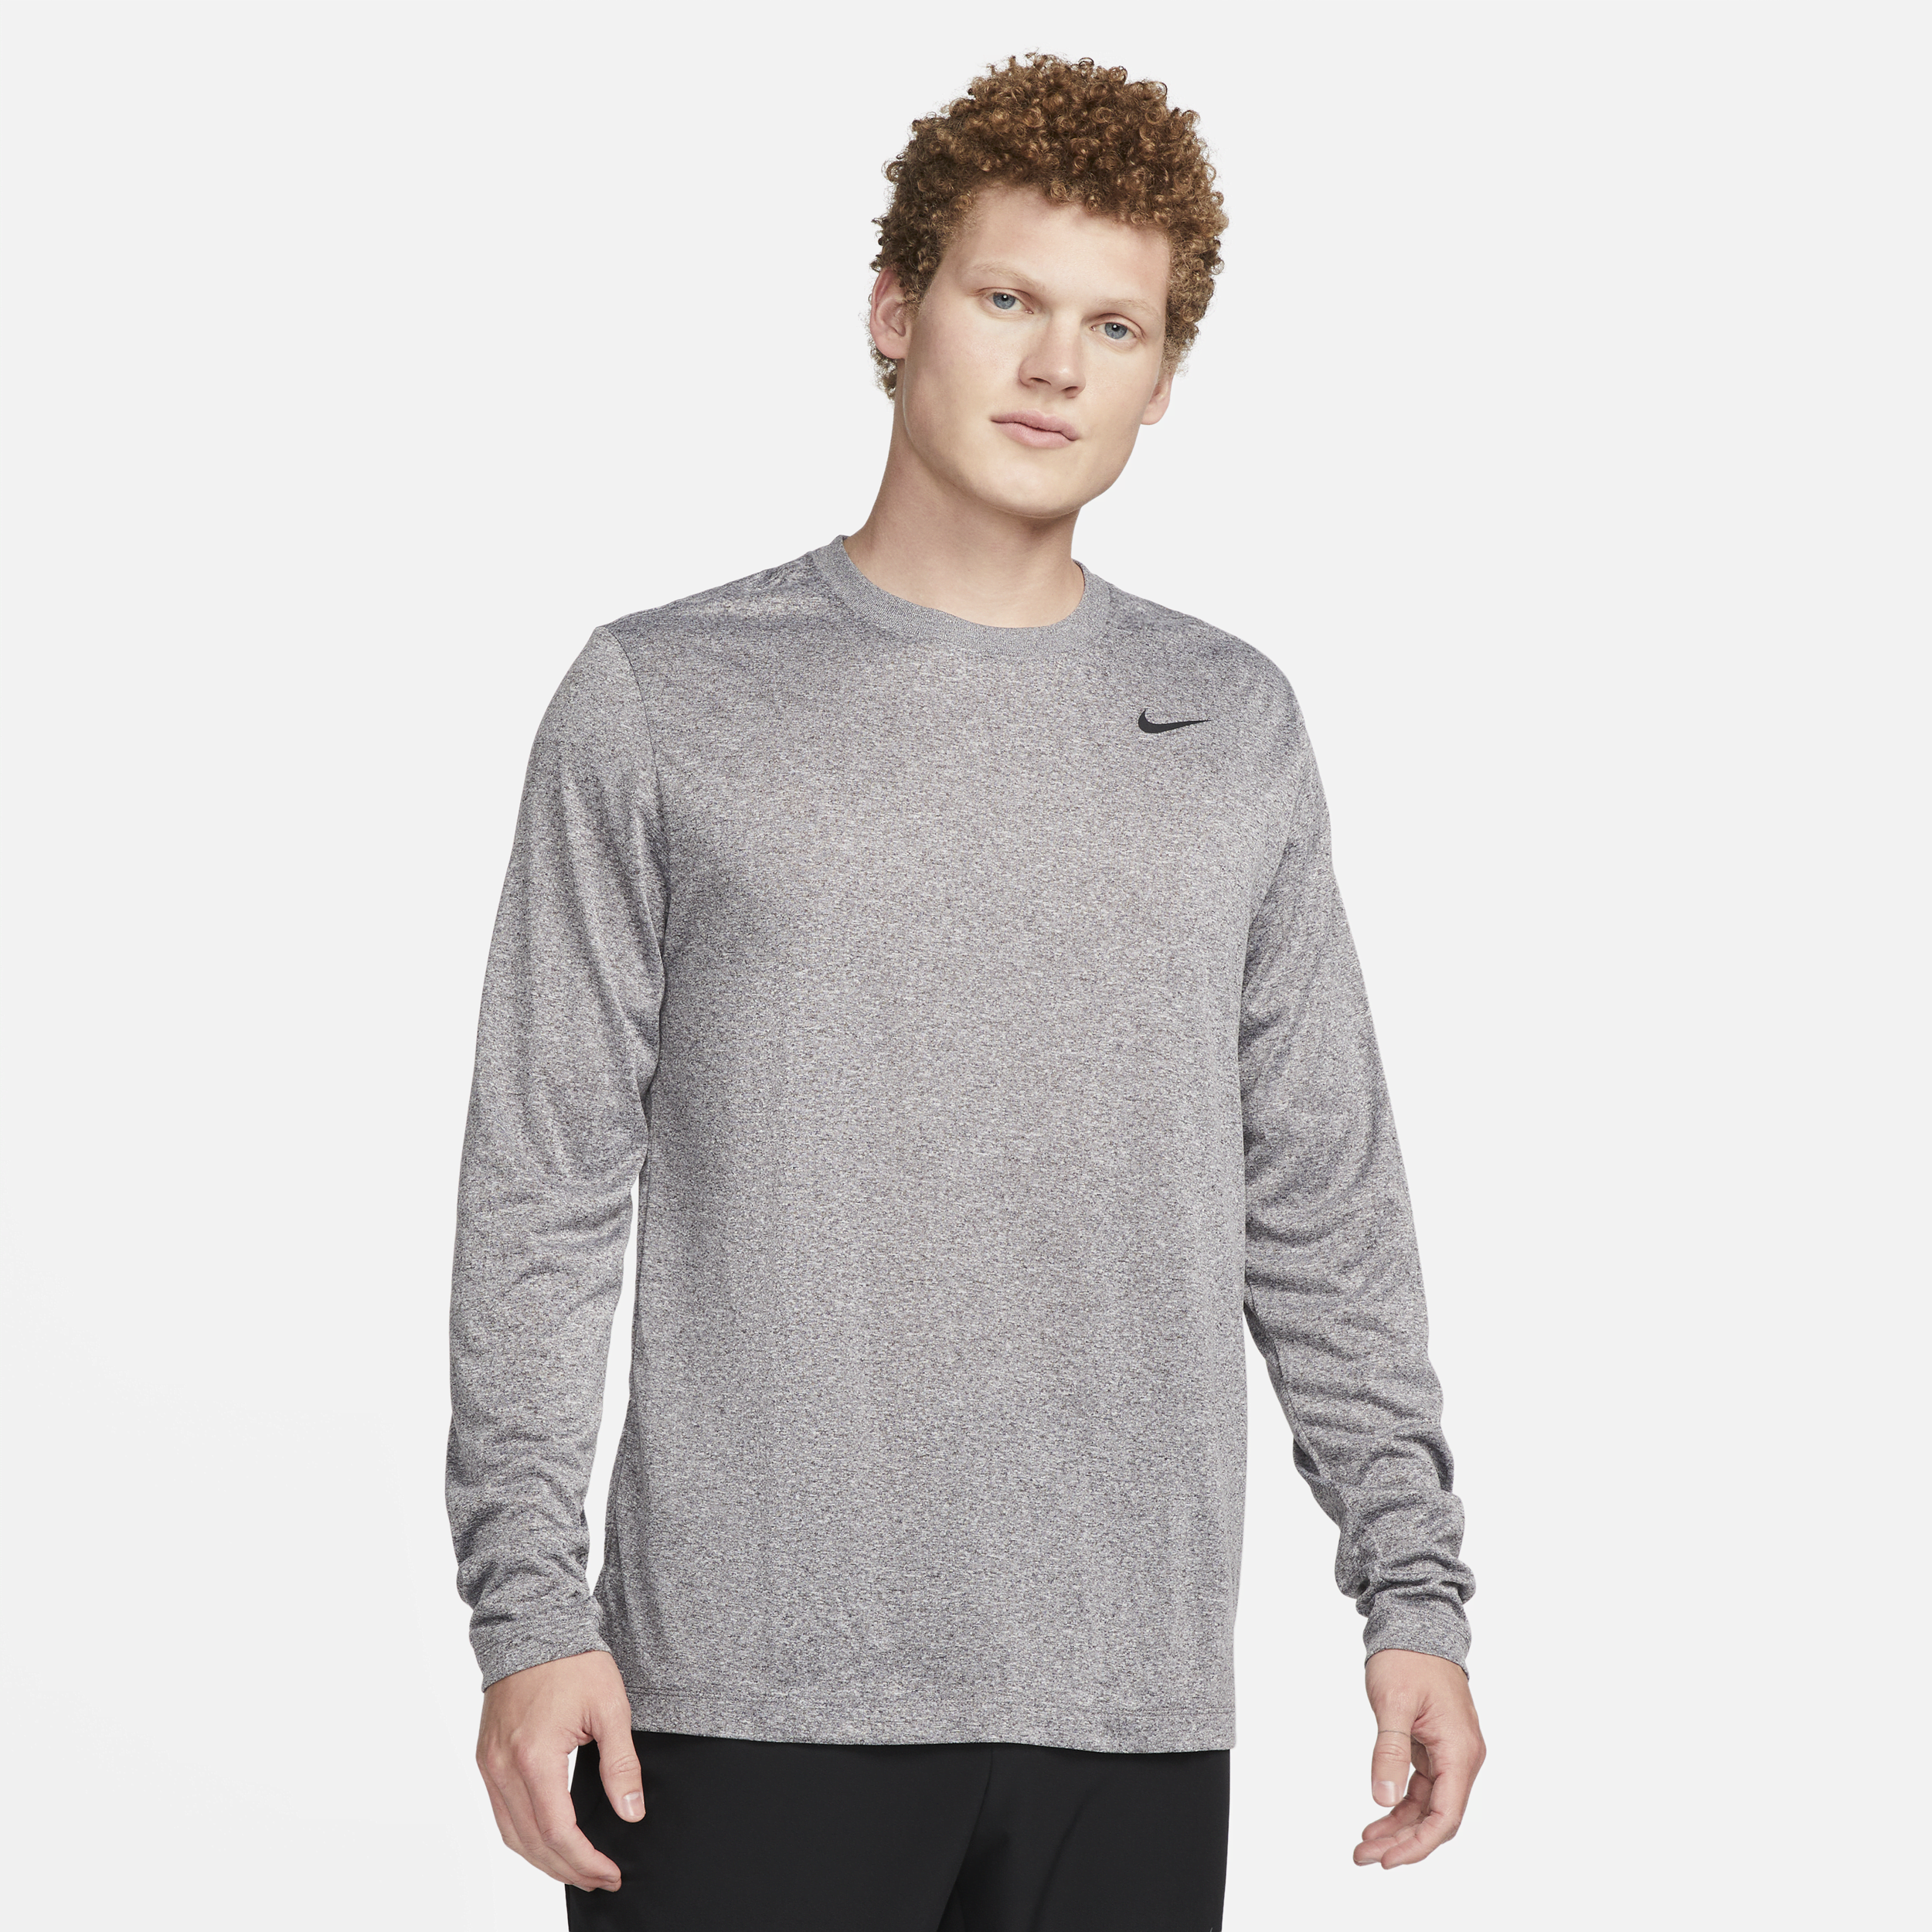 Nike Men's Dri-fit Legend Long-sleeve Fitness Top In Grey